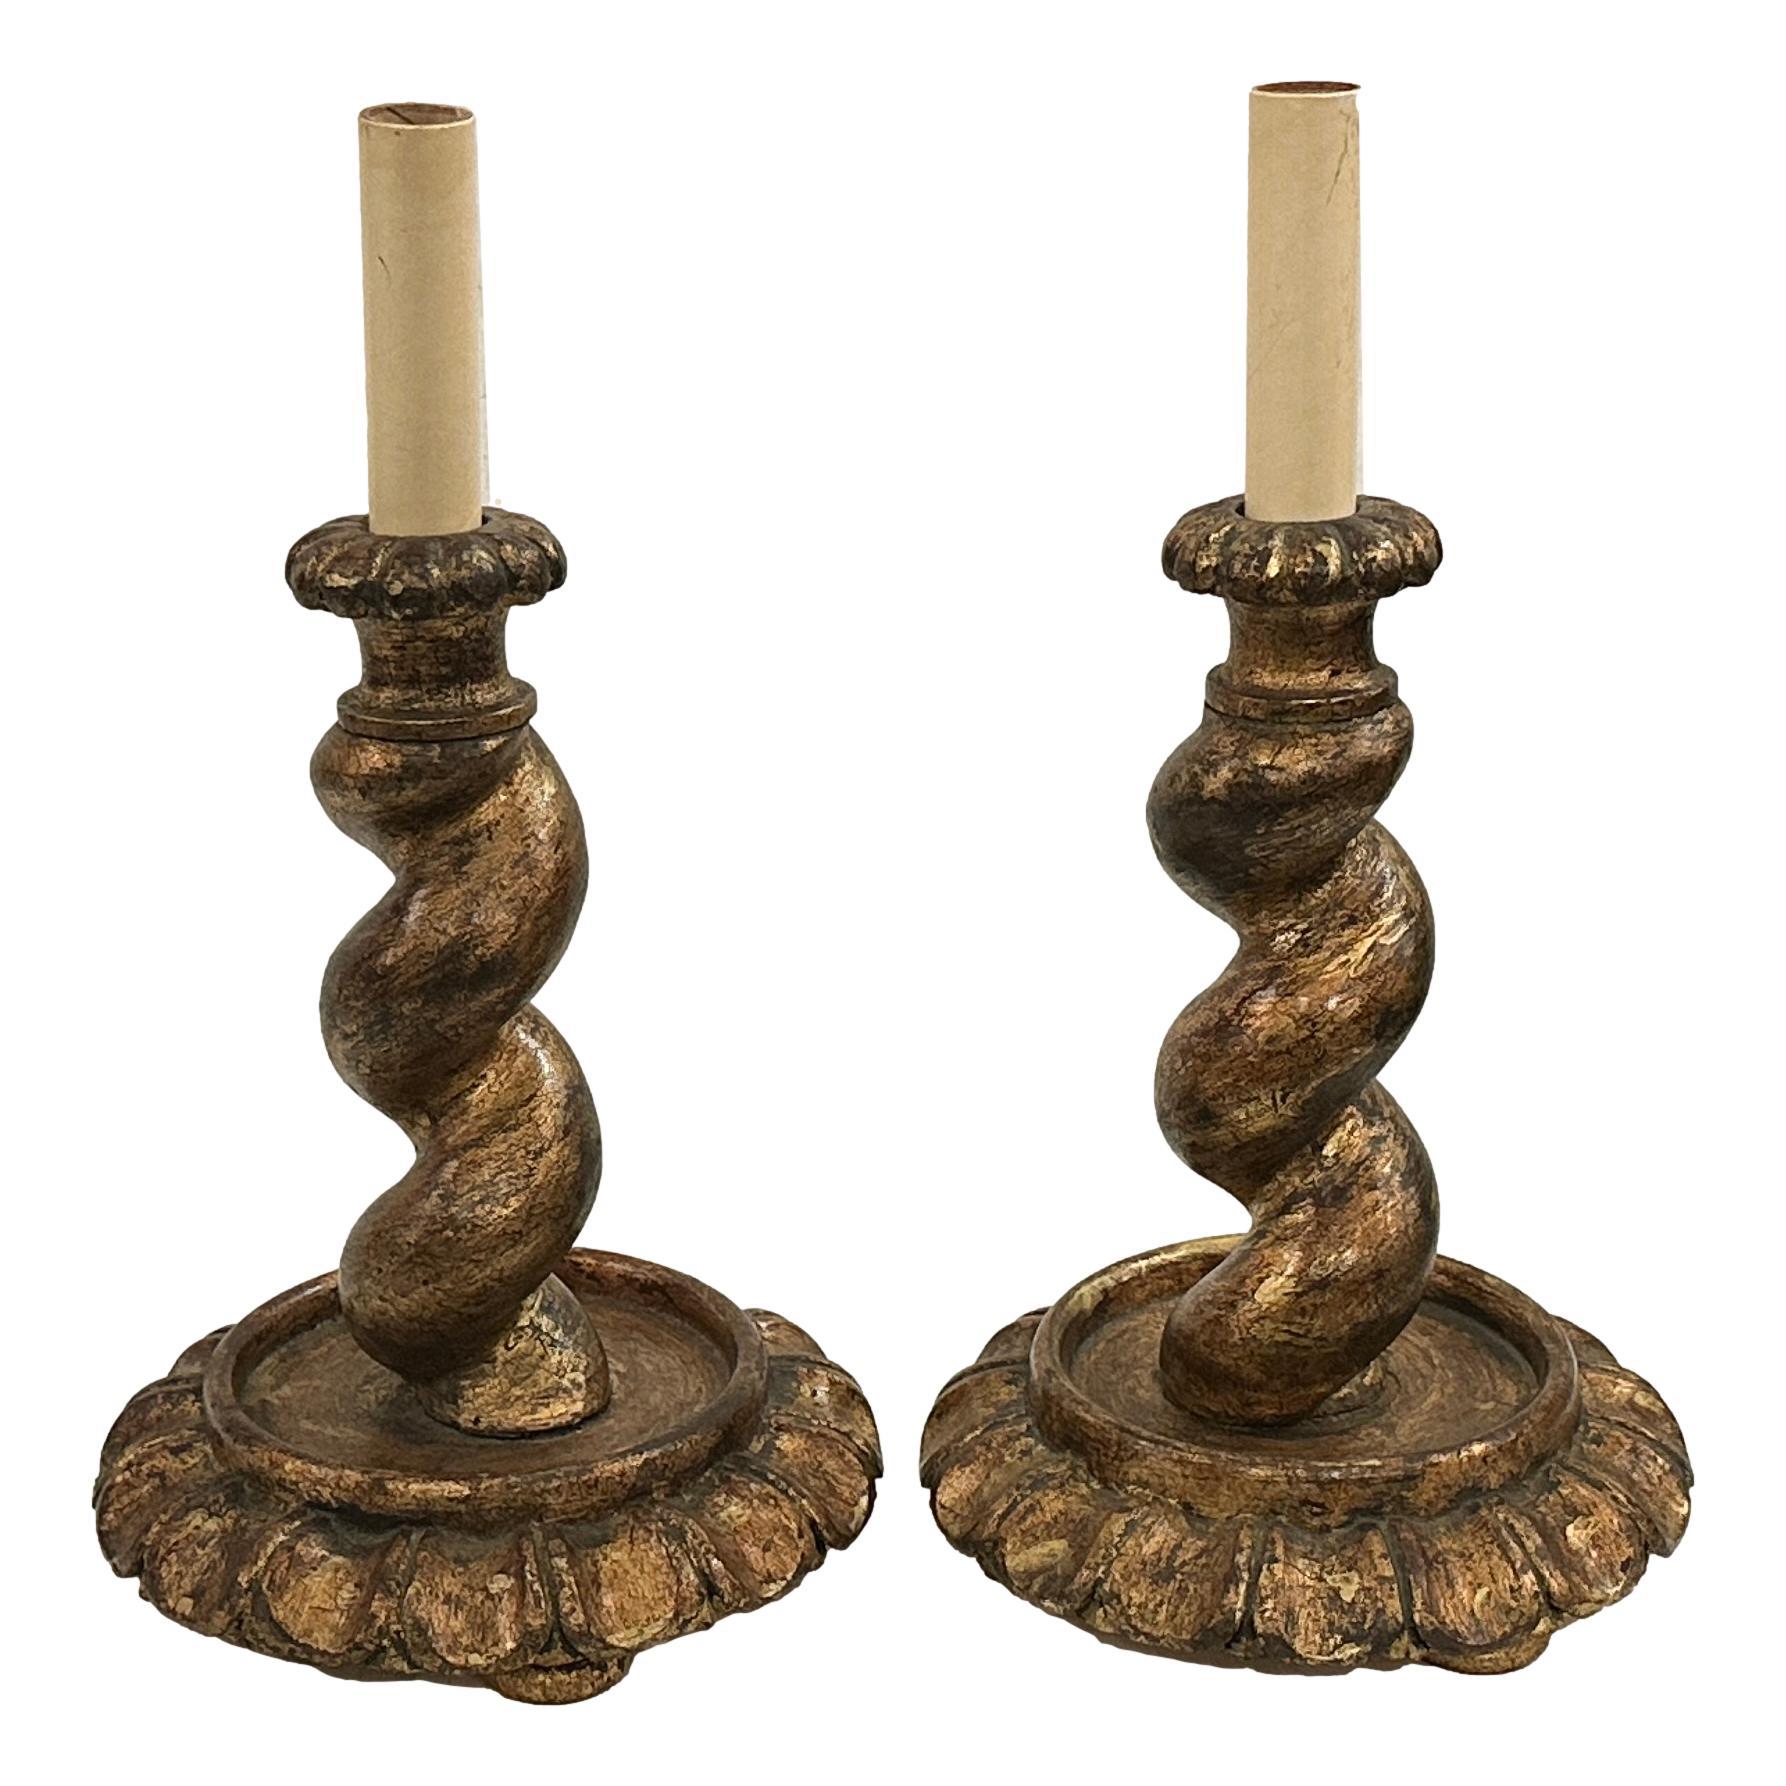 Paire de lampes de table en bois sculpté et doré, datant des années 1920.

Mesures
Hauteur : 13